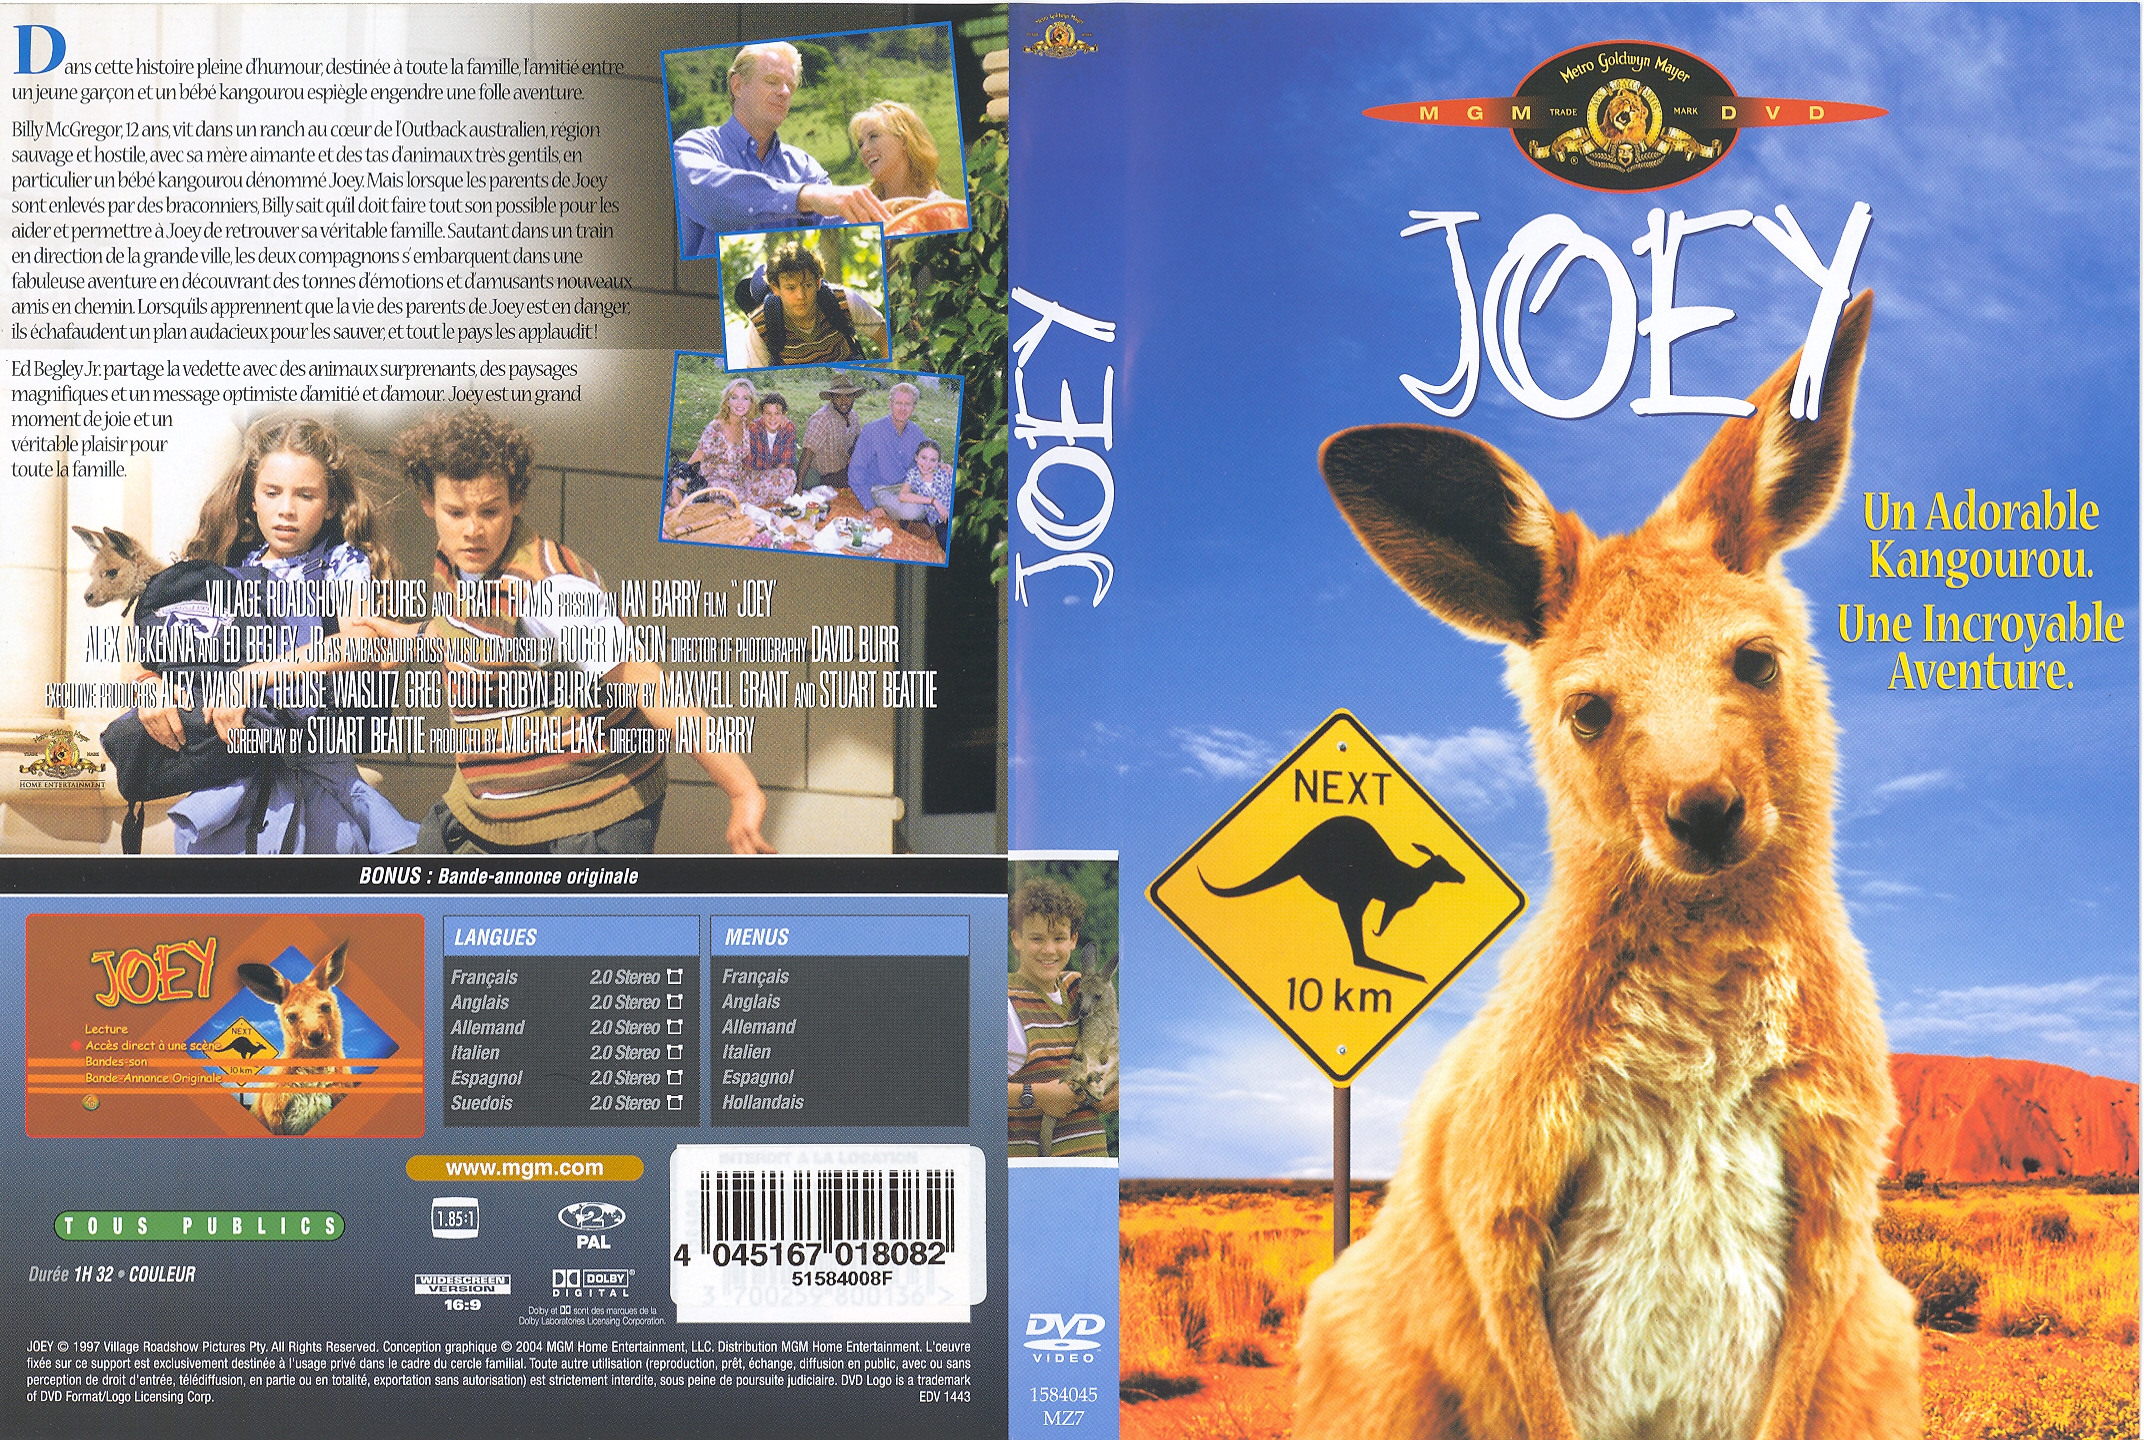 Jaquette DVD Joey